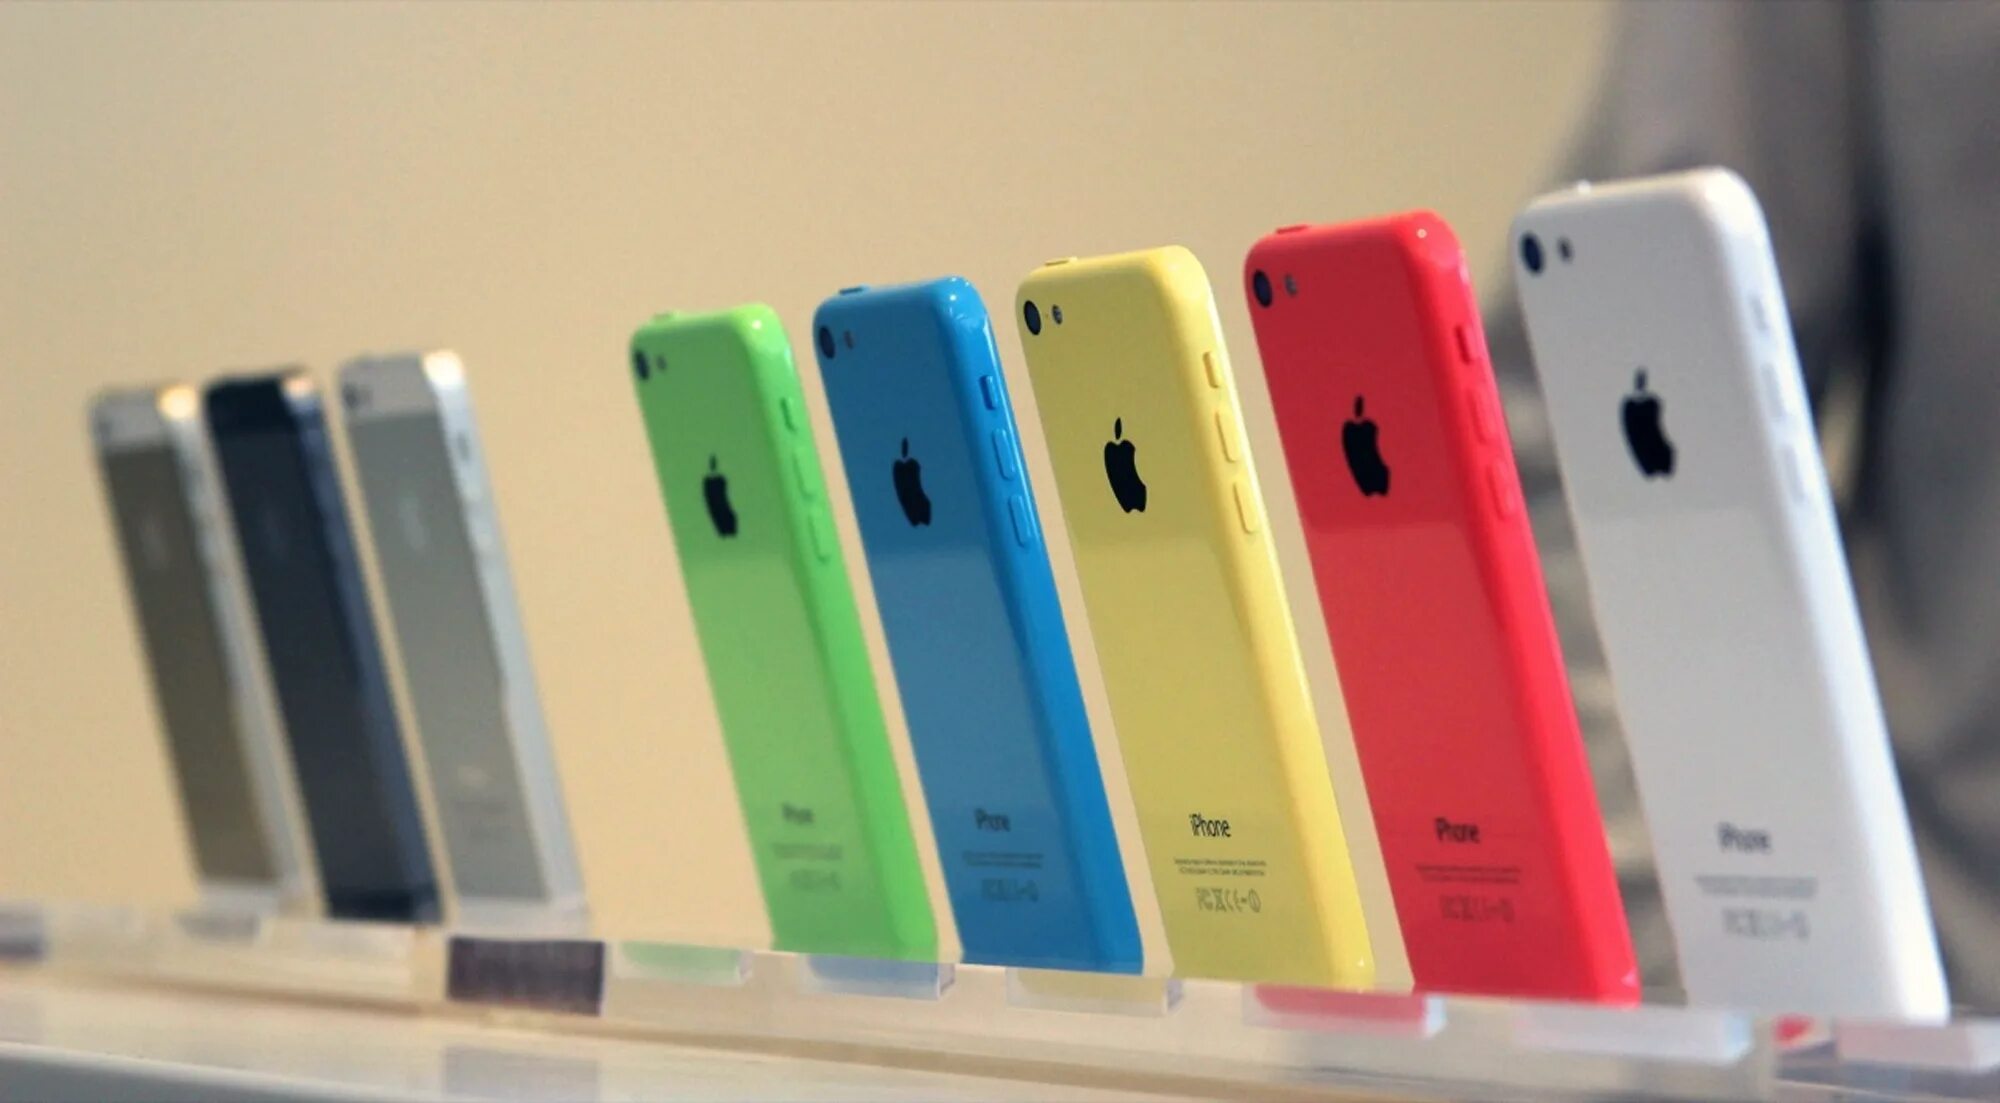 Кипи 5 с. Iphone 5c. Айфон 5c цвета. Айфон на прилавке. Iphone 5 с пластиковым корпусом.